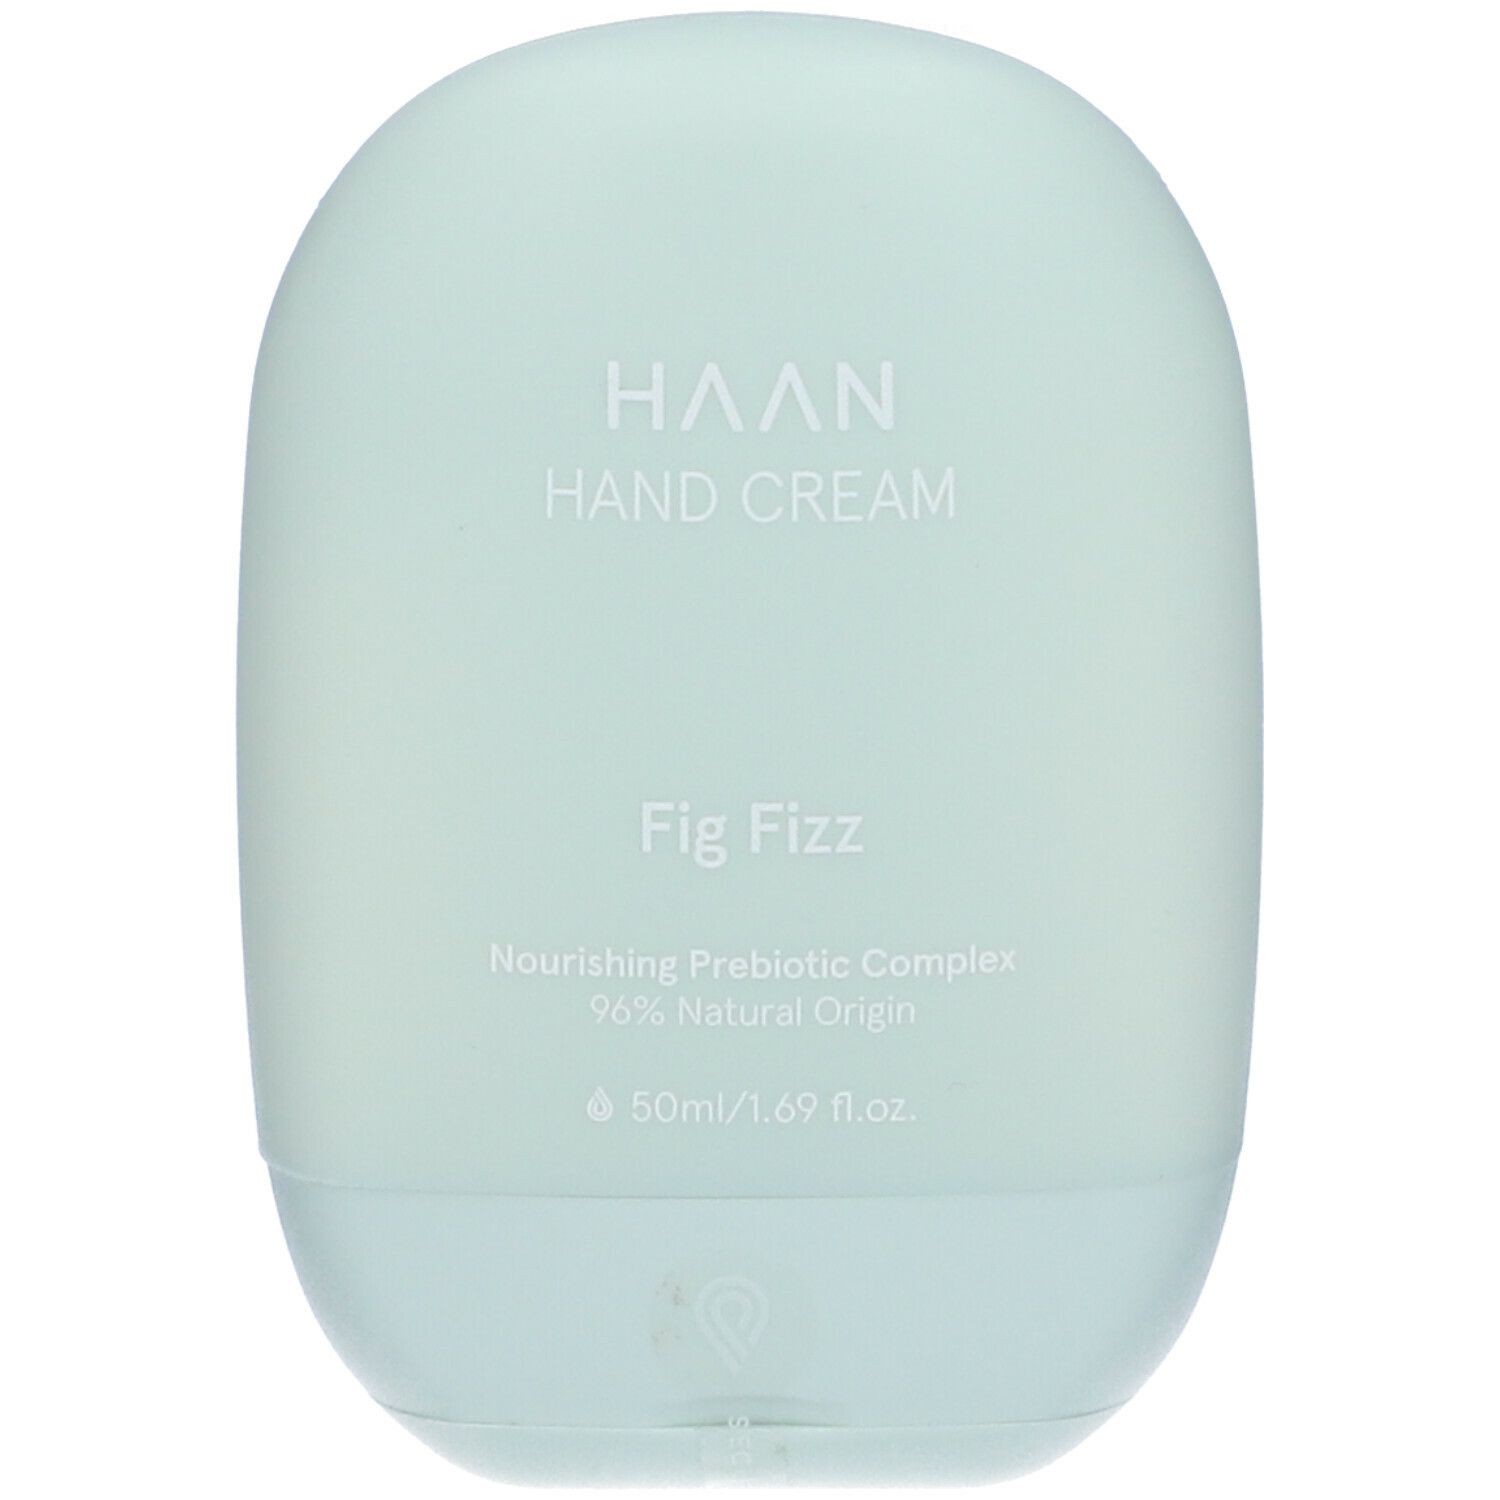 HAAN, Fig Fizz Hand Cream